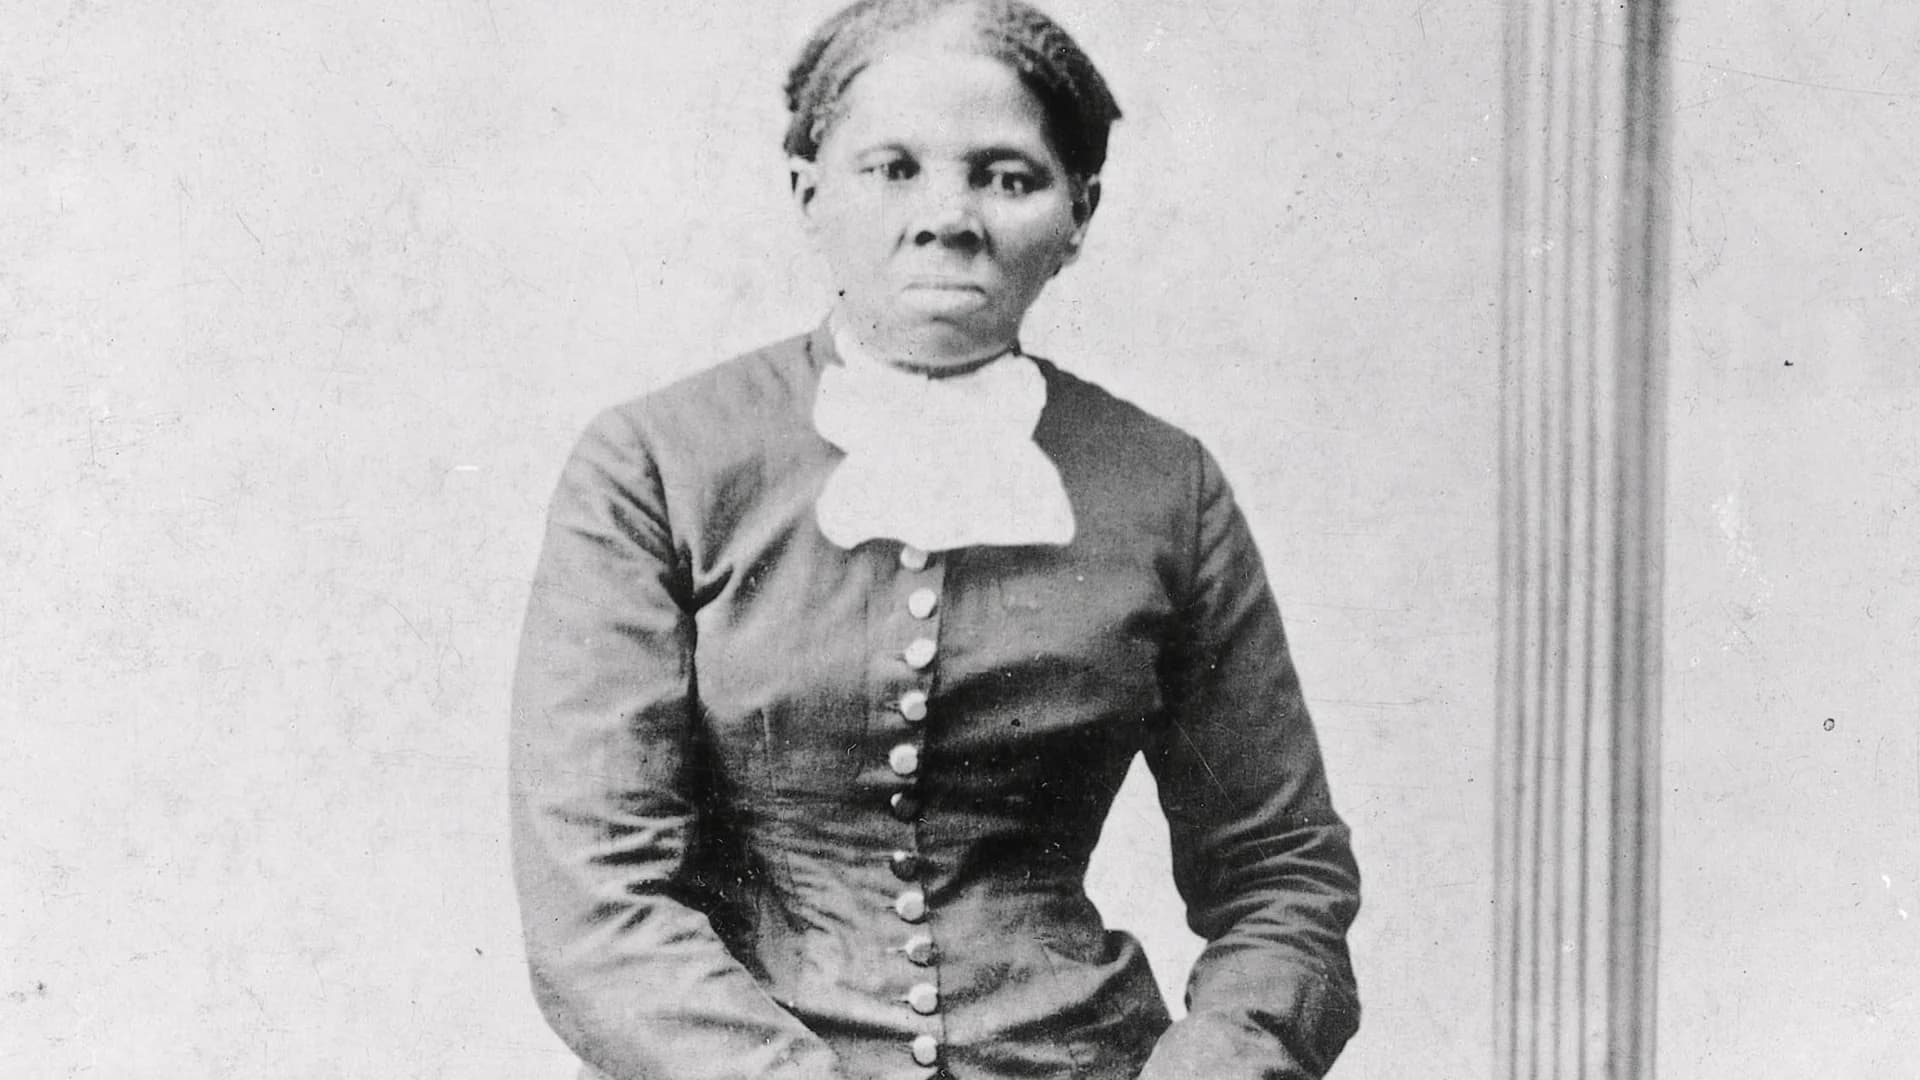 Effort to put Harriet Tubman on $20 bill restarted under Biden